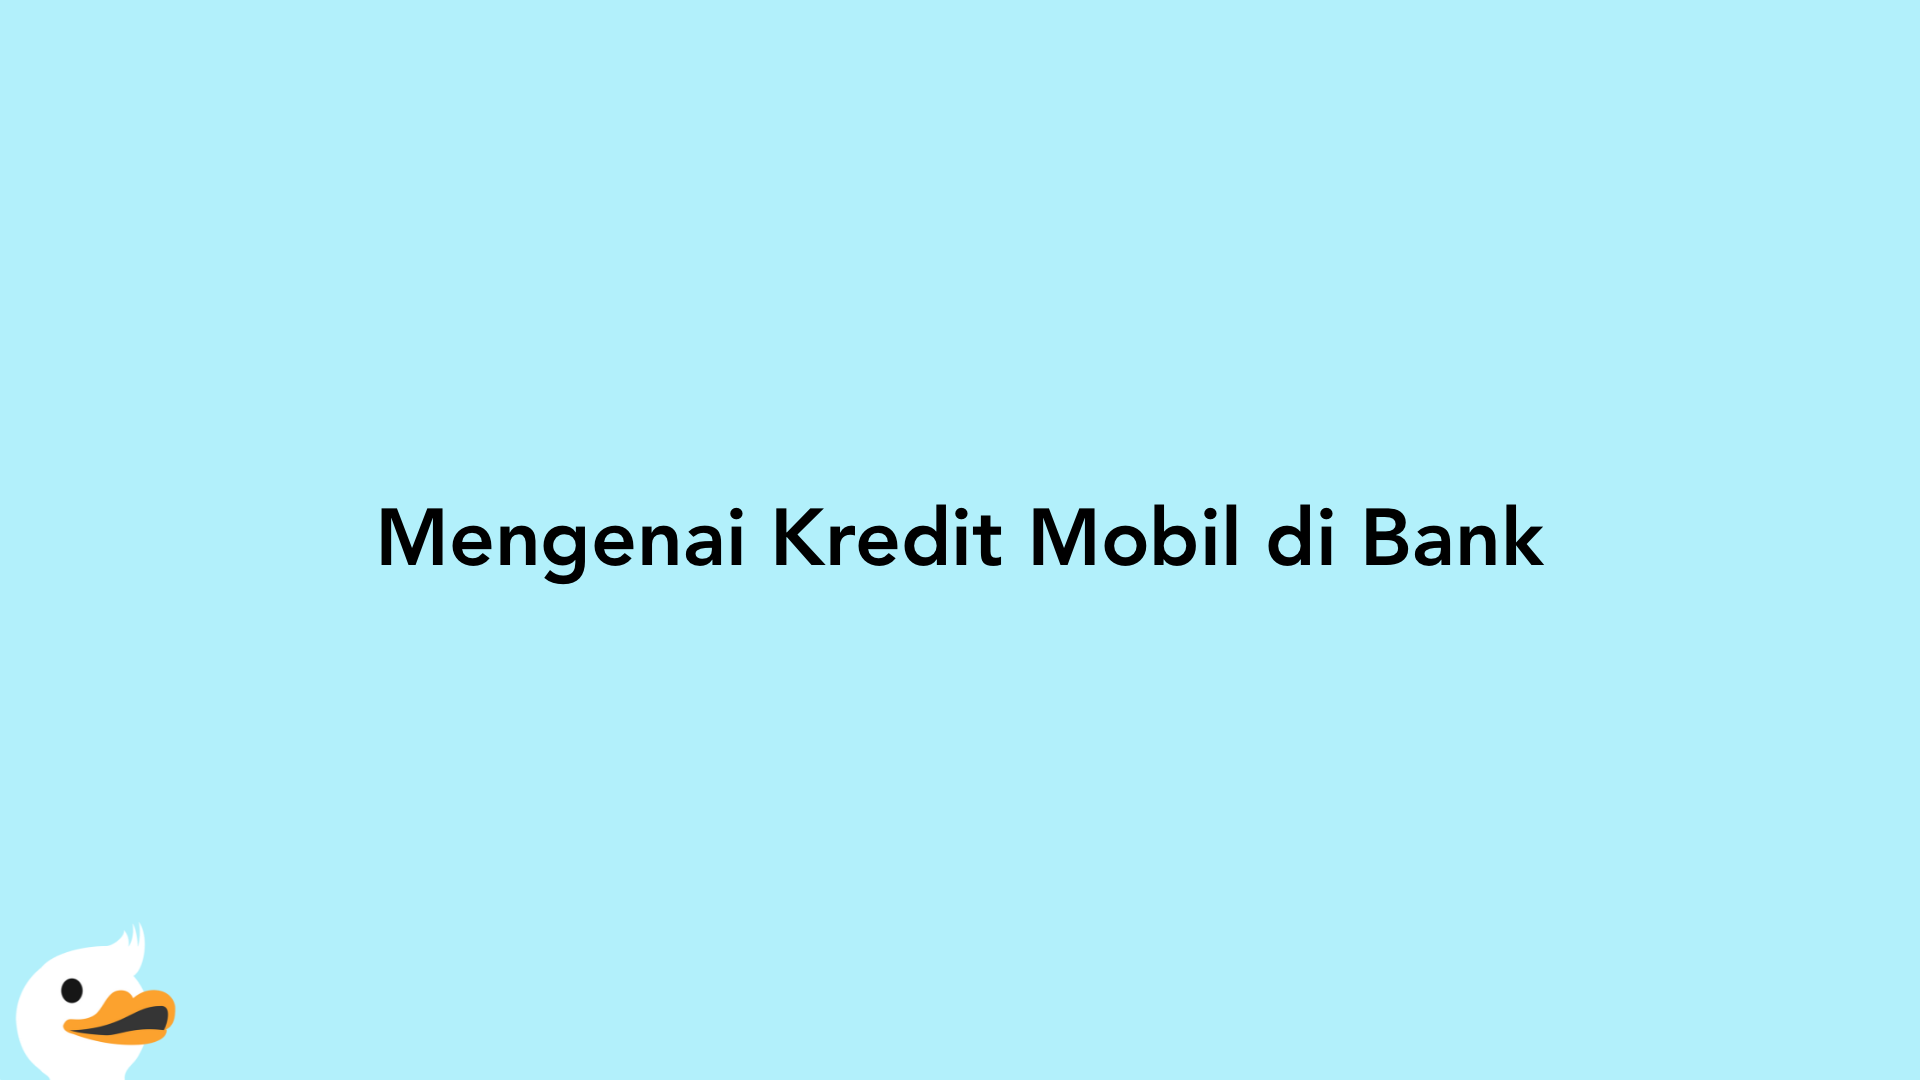 Mengenai Kredit Mobil di Bank